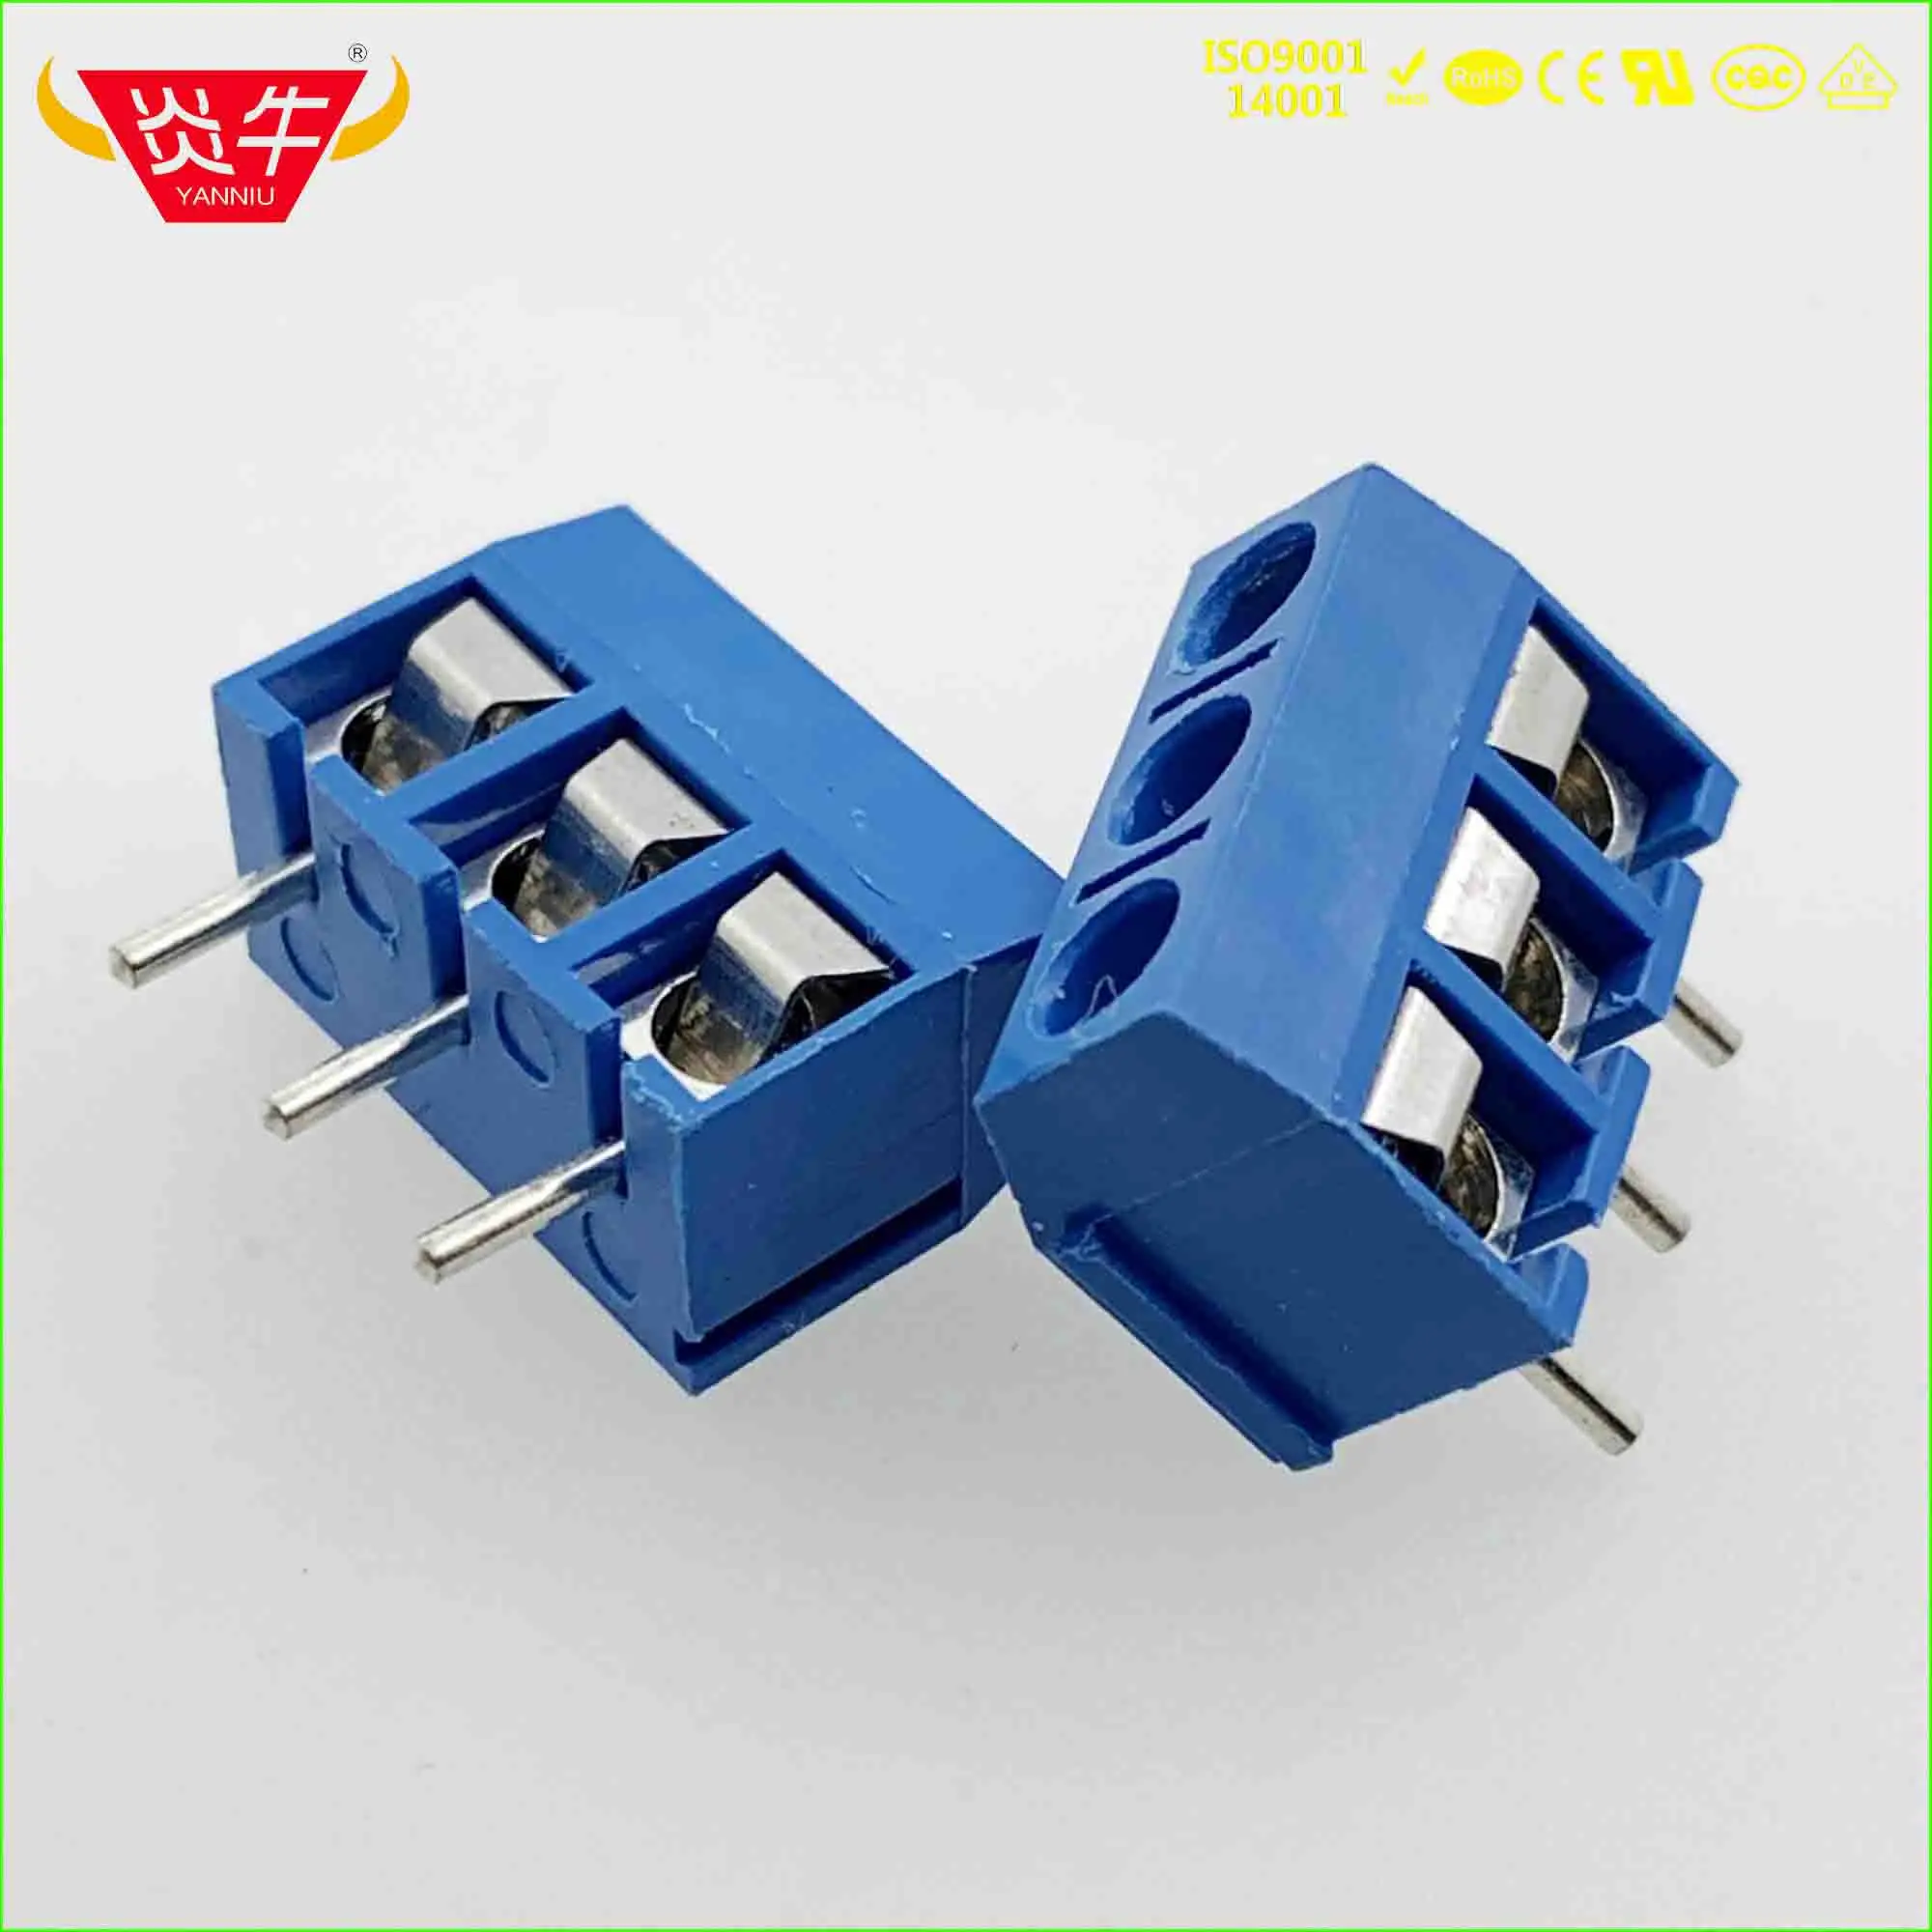 KF301 5,0 2P 3P PCB универсальные Винтовые клеммные блоки синий пластик Высота 10 мм DG301 5,0 мм Шаг 2PIN 3PIN PHOENIX DEGSON KEFA - Цвет: 301-5.0-3P